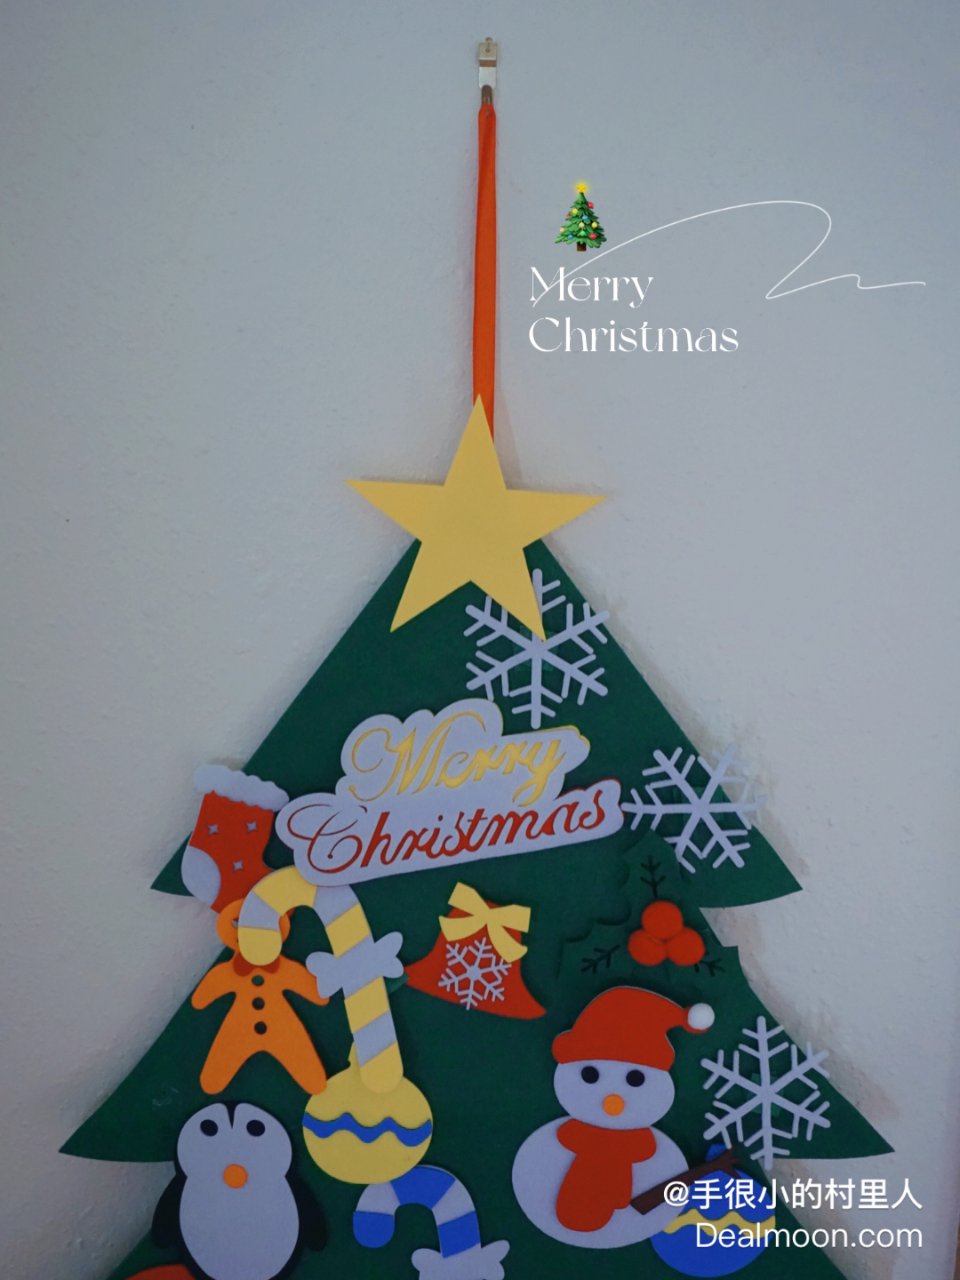 小朋友也能自己装饰的圣诞树🎄...